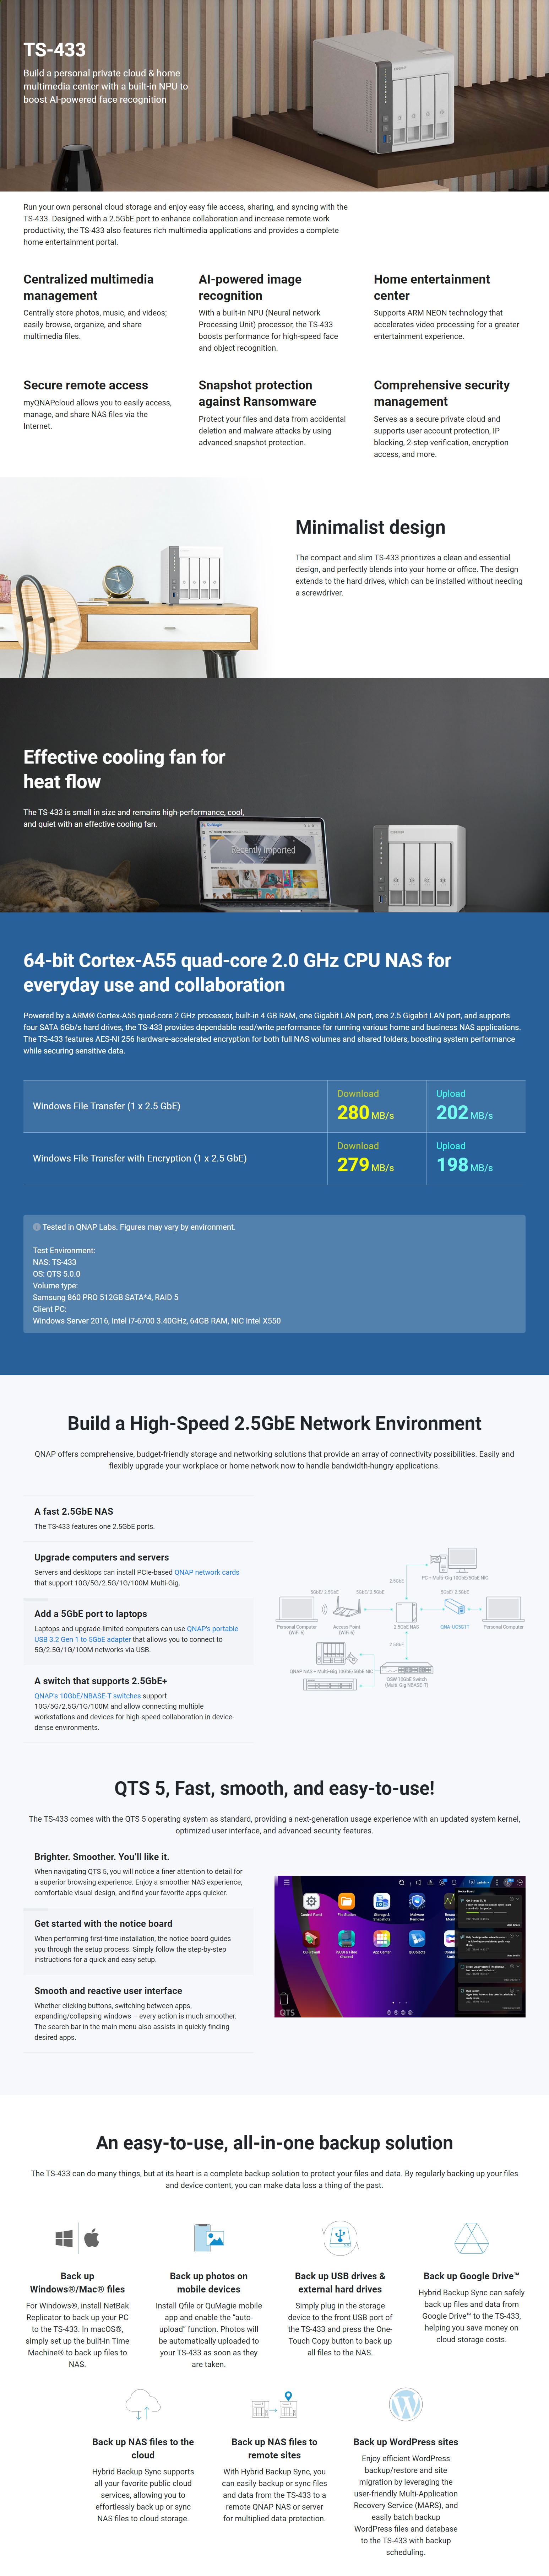 NAS-Network-Storage-QNAP-TS-433-4G-4-Bay-Quad-Core-4GB-NAS-1